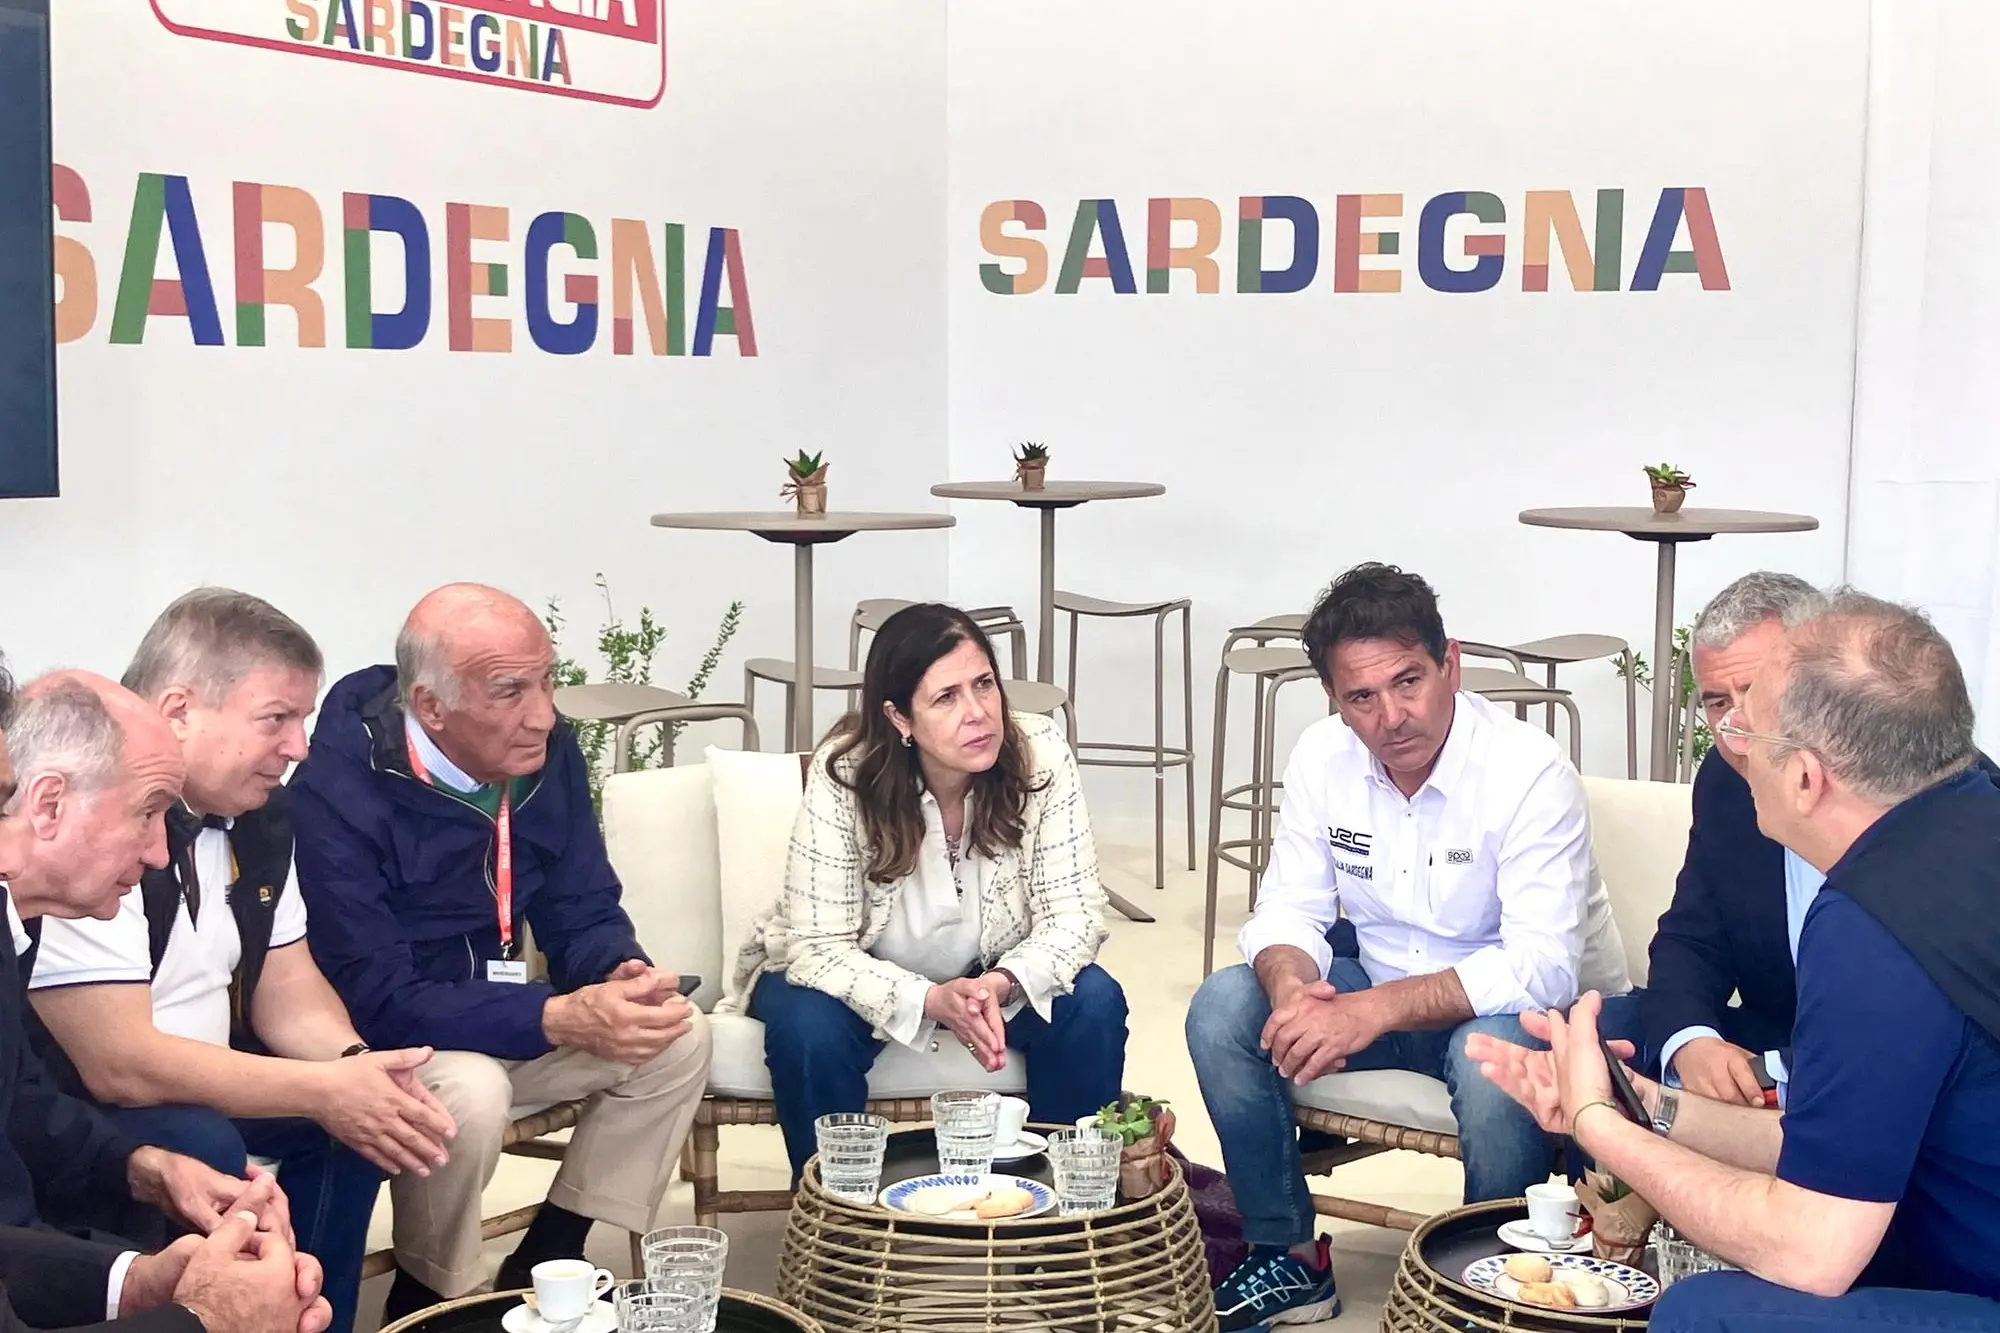 L’incontro della presidente Alessandra Todde coi vertici Aci a Casa Sardegna (foto Vanna Chessa)